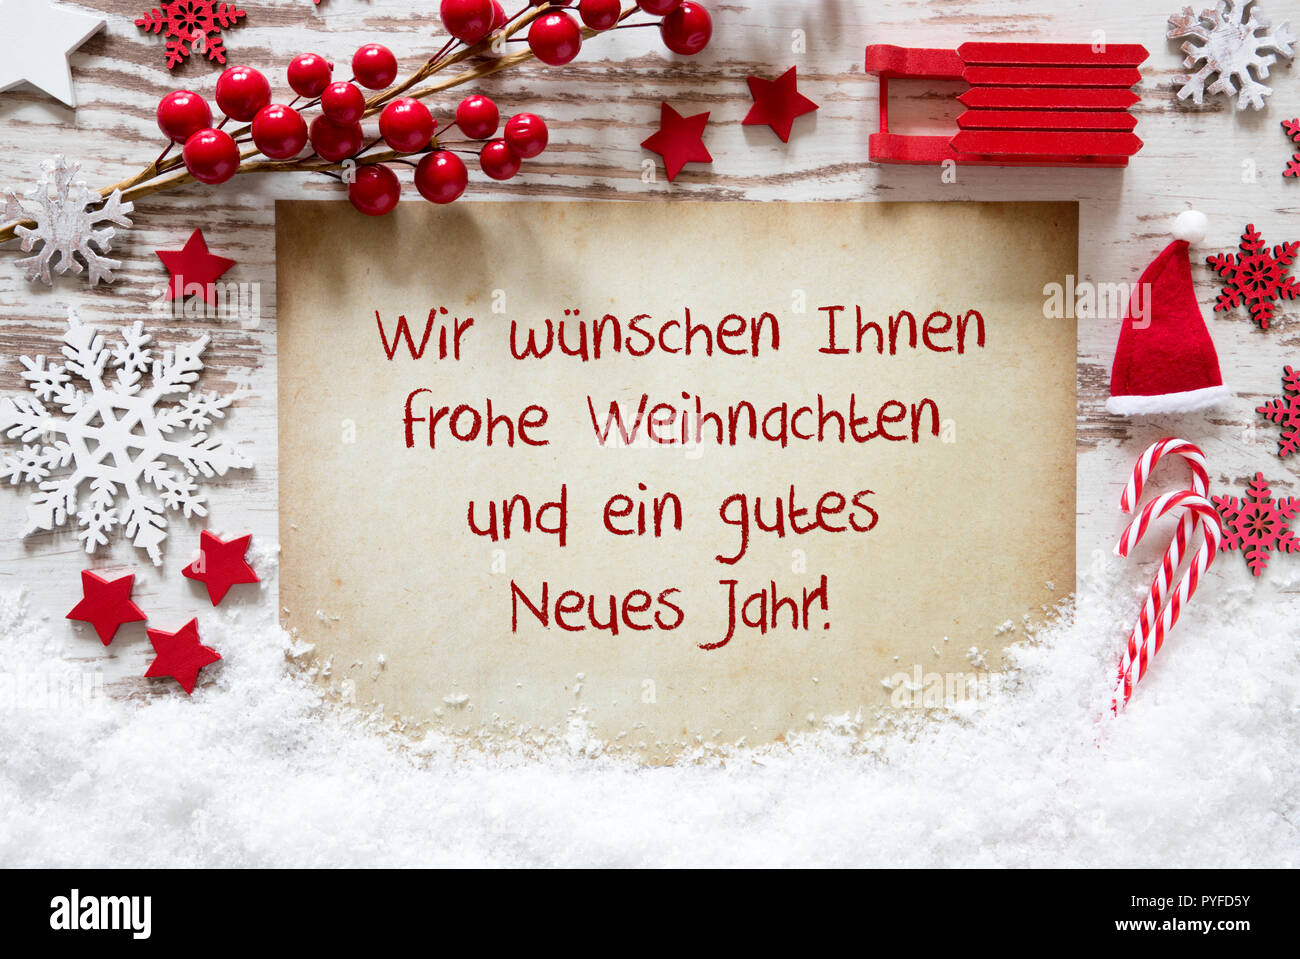 Frohe Weihnachten, Gutes Neues Jahr significa Feliz Navidad y Próspero Año Nuevo Foto de stock